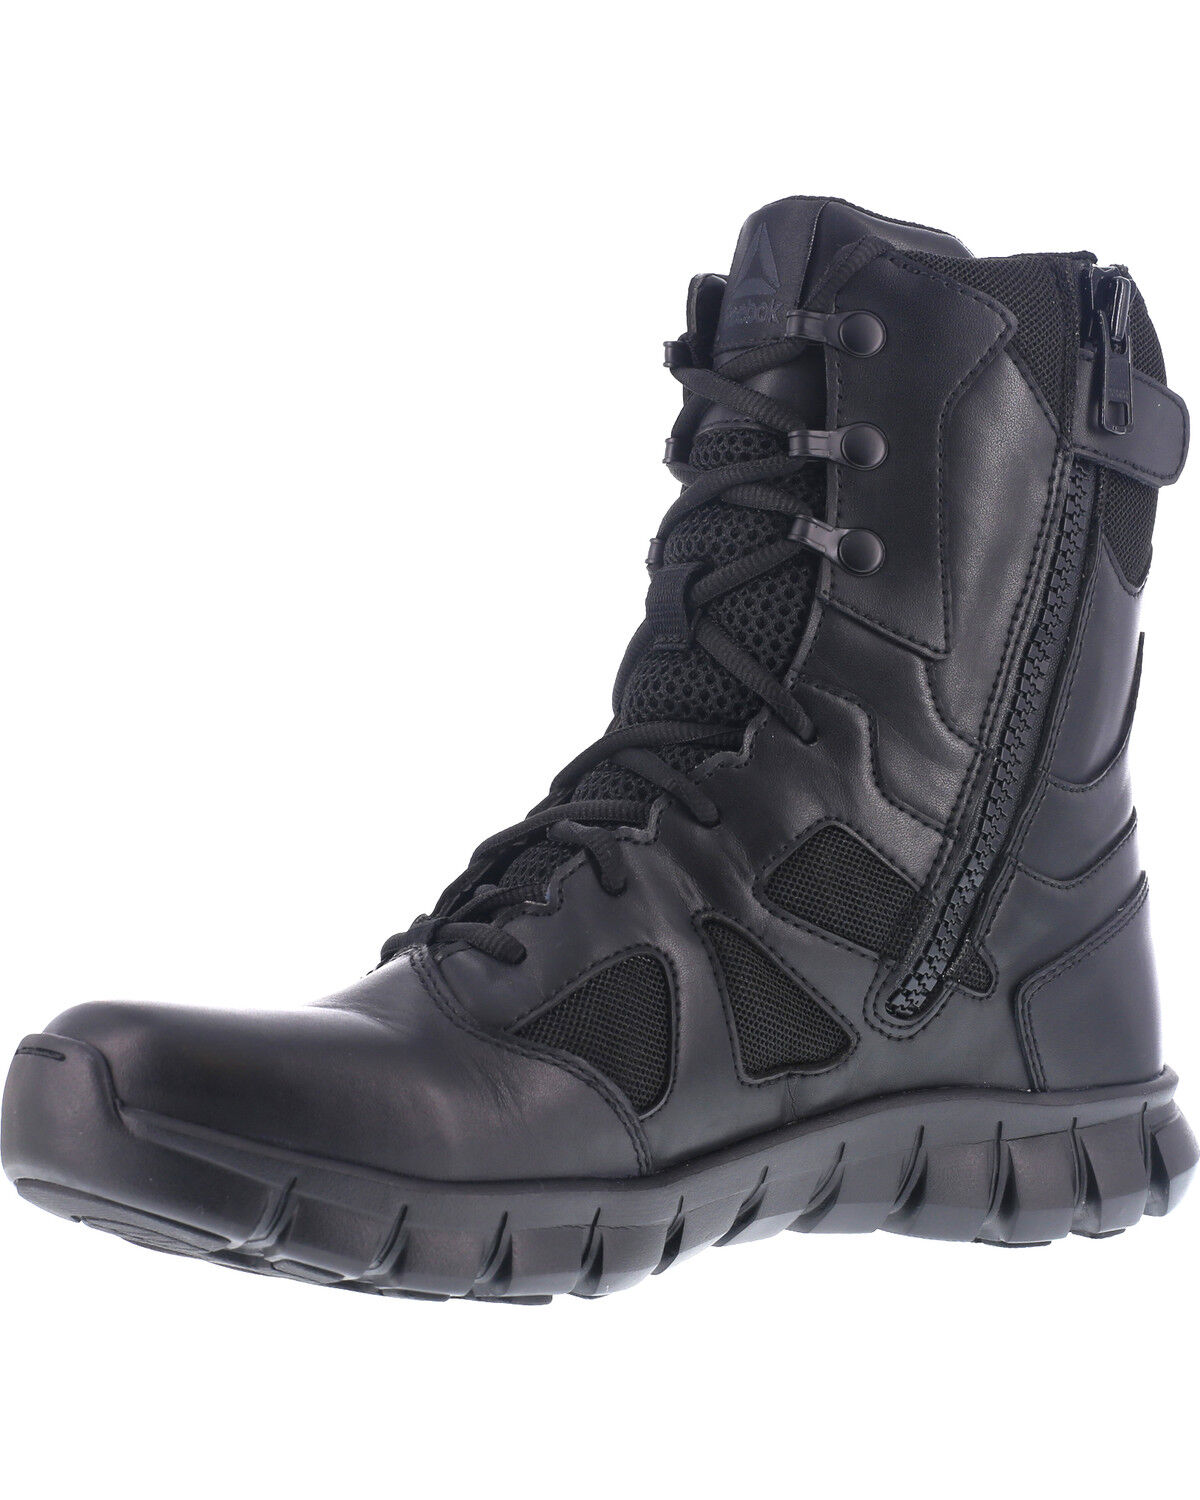 reebok women's tactical boots